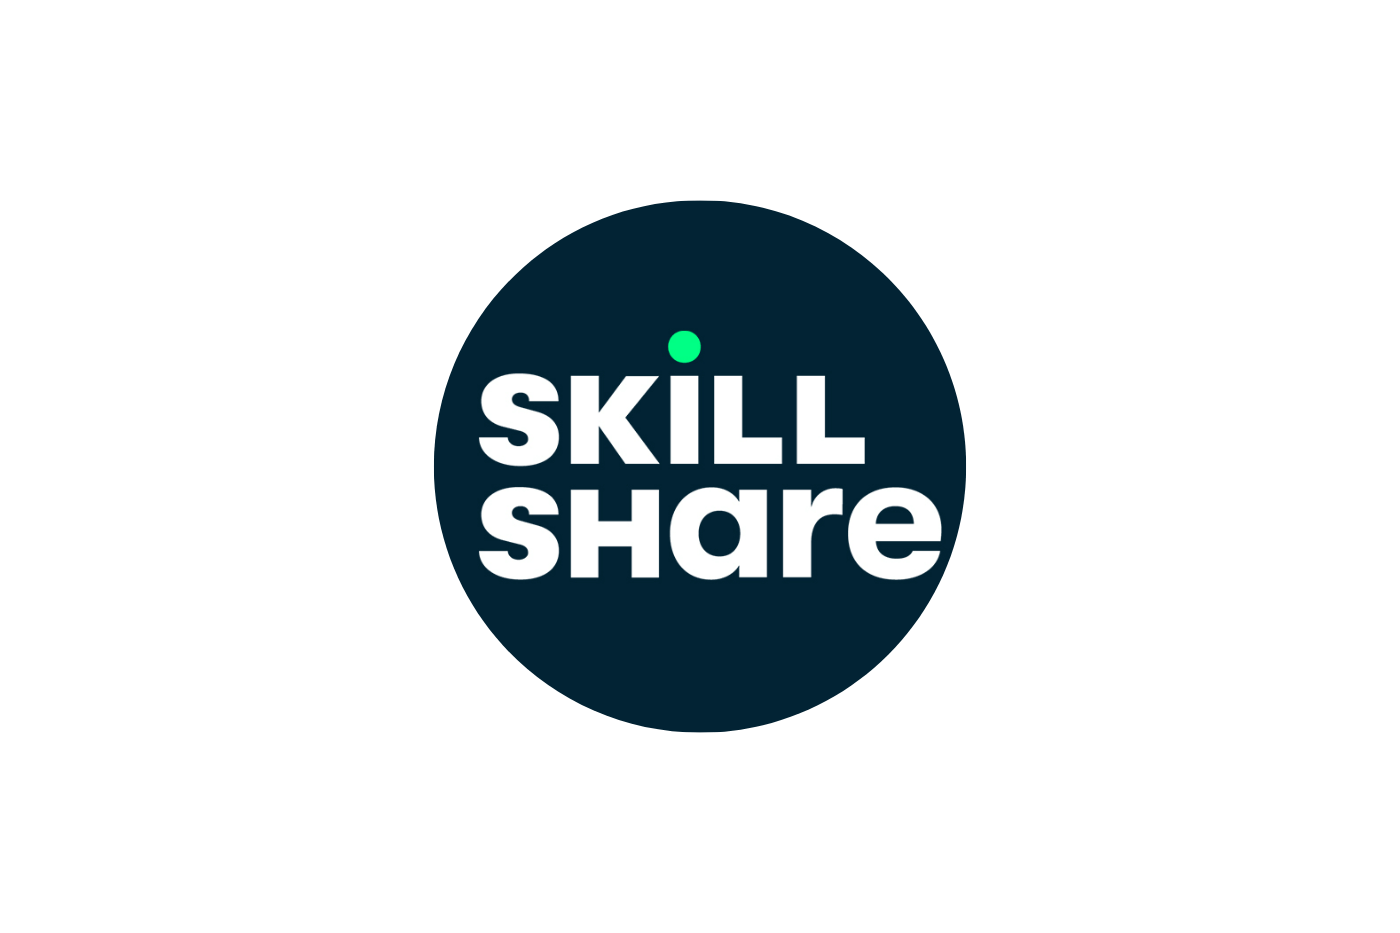 skillshare logo